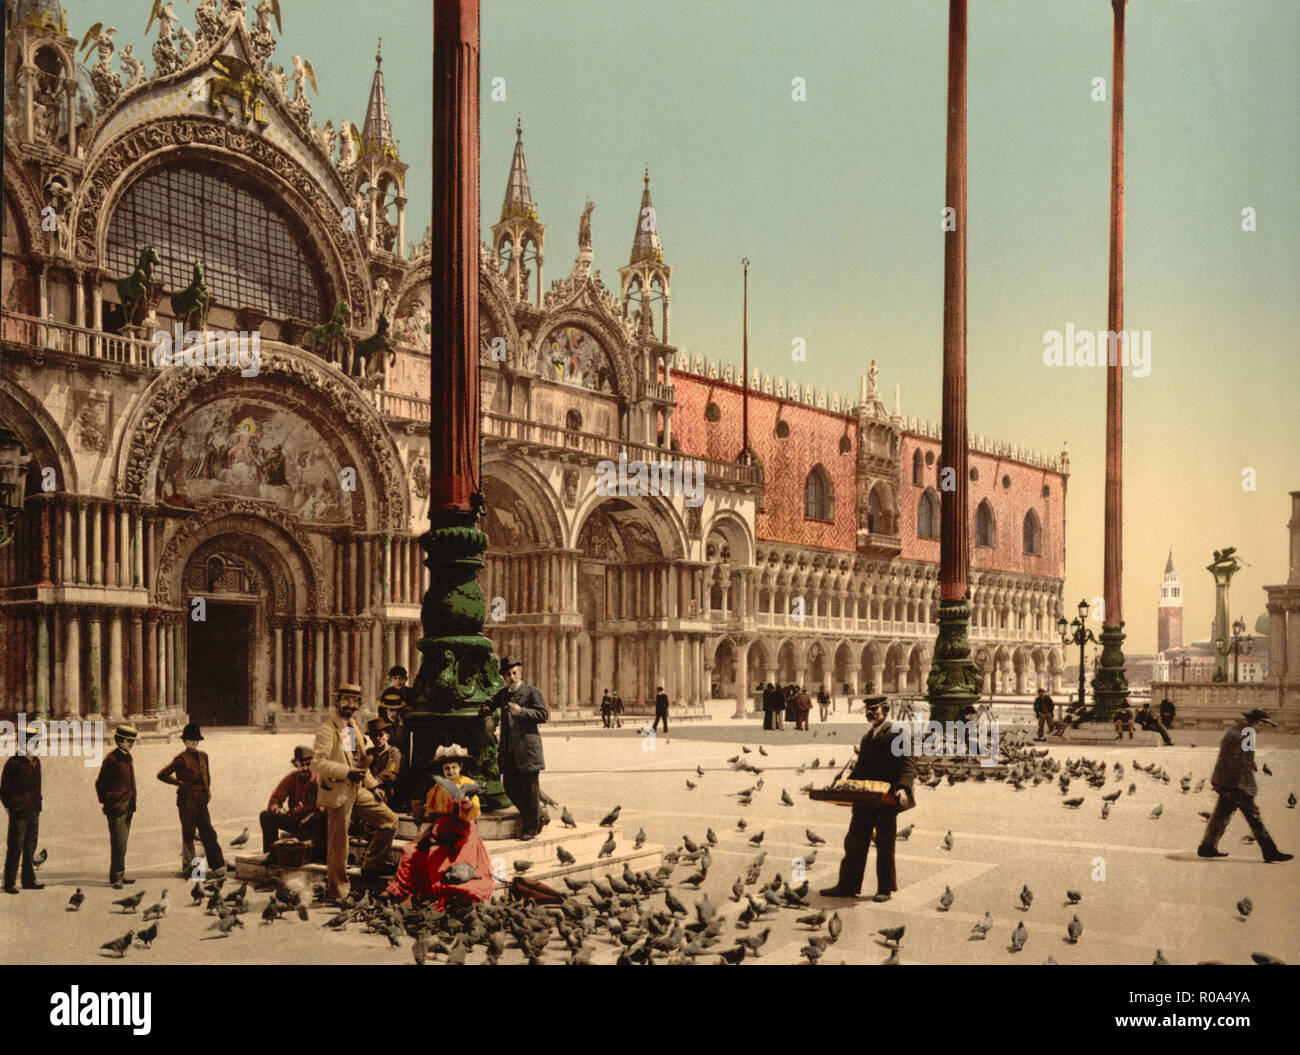 Les pigeons dans la place, Venise, Italie, impression Photochrome, Detroit Publishing Company, 1900 Banque D'Images